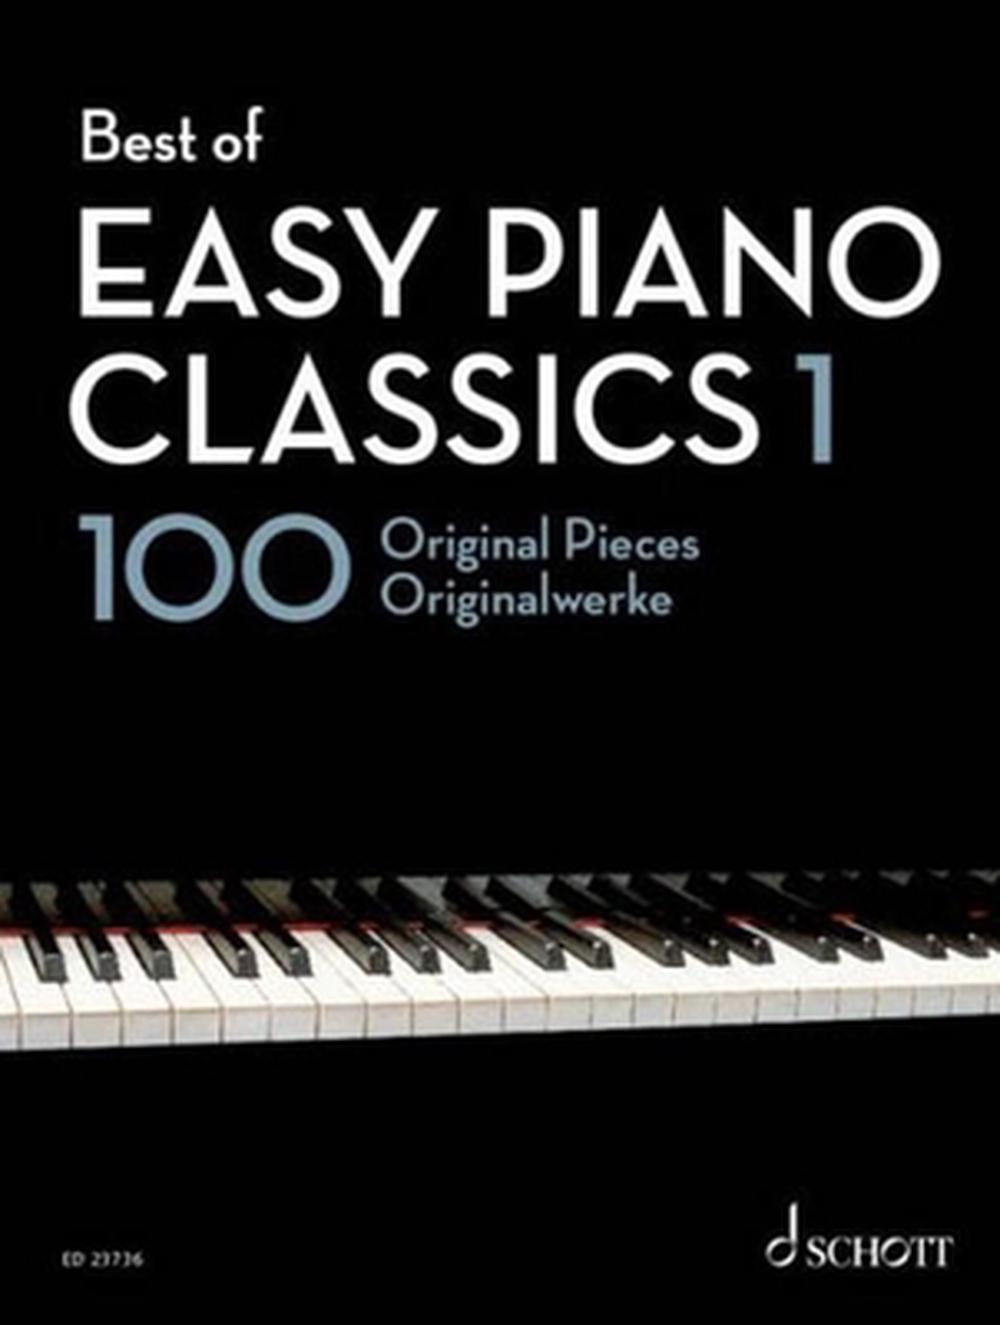 Best of Easy Piano Classics 1: 100 pièces originales par Hans-G?nter Heumann - Photo 1 sur 1